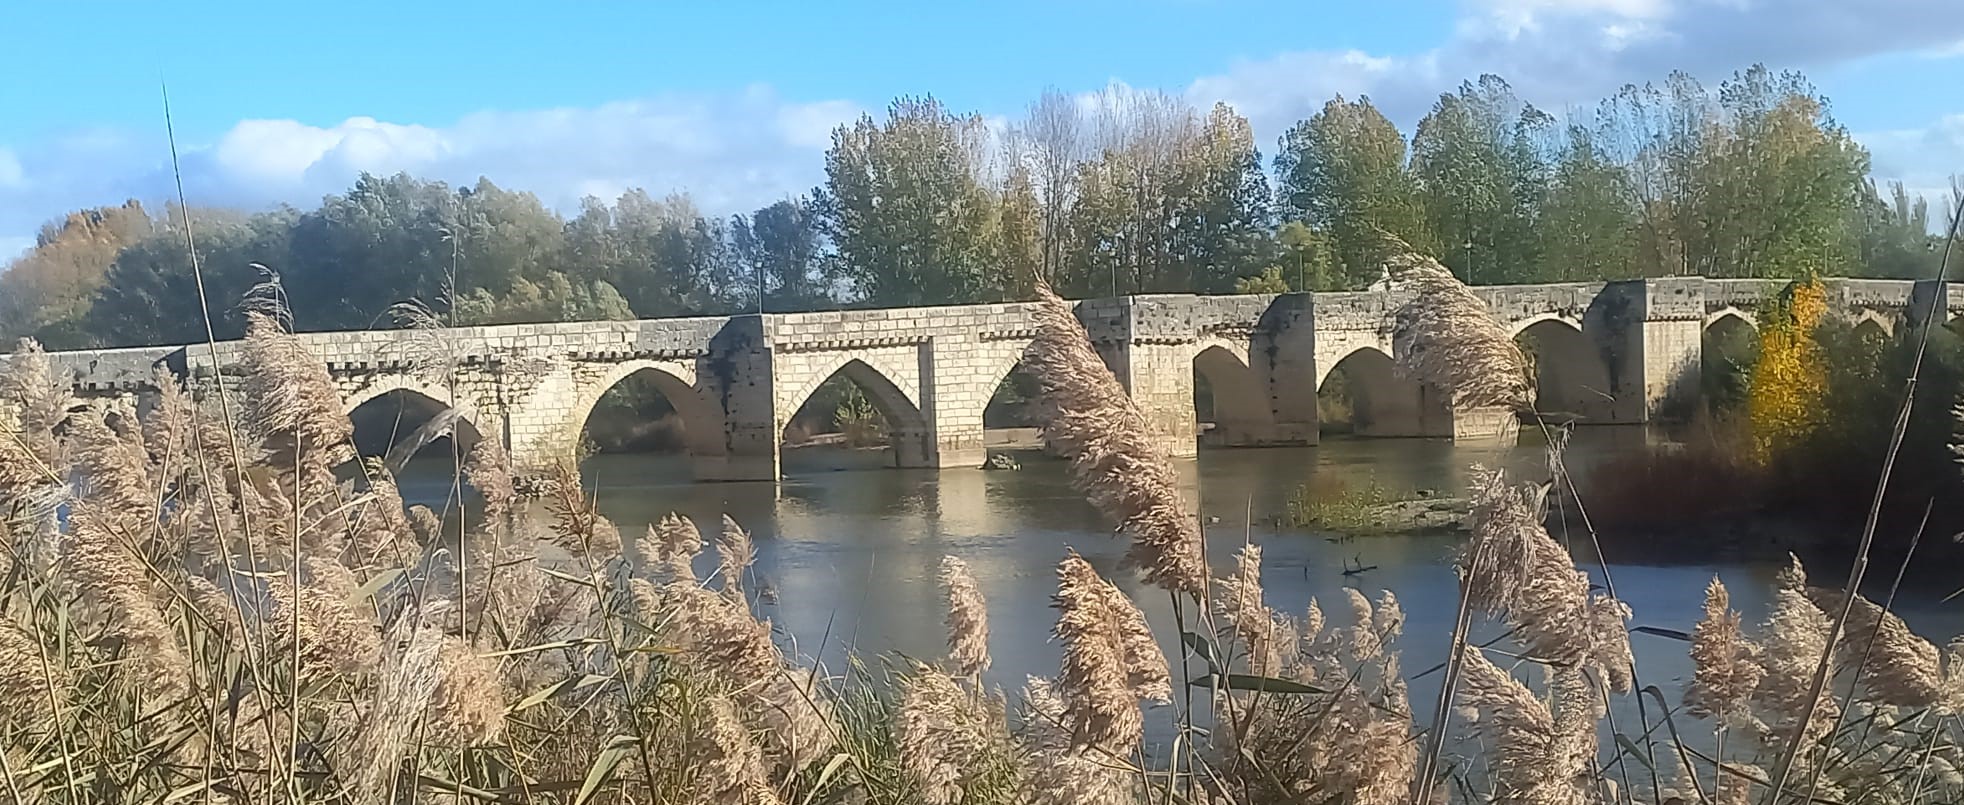 Puente medieval de Simancas,  sobre el Pisuerga, muy posiblemente rehecho sobre uno anterior romano que pasaría por la mansio de Septimanca. Foto del autor.